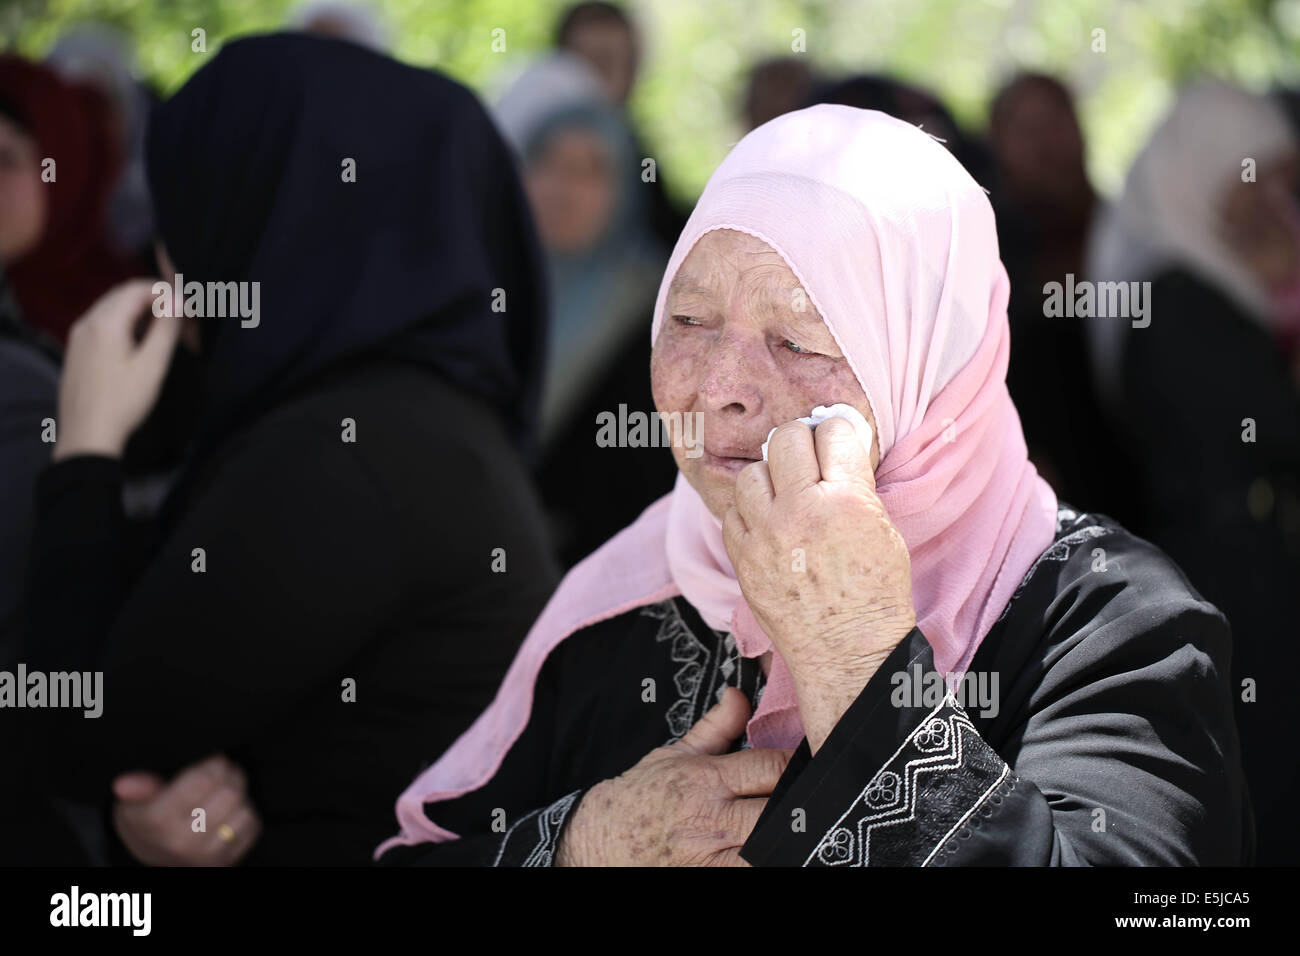 Ramallah. 2 agosto, 2014. I parenti di palestinesi Odai Jaber piangono durante il suo funerale vicino al West Bank città di Ramallah, 2 agosto 2014. Odai Jaber, 19 anni, è stato ucciso durante gli attacchi israeliani. Credito: Fadi Arouri/Xinhua/Alamy Live News Foto Stock